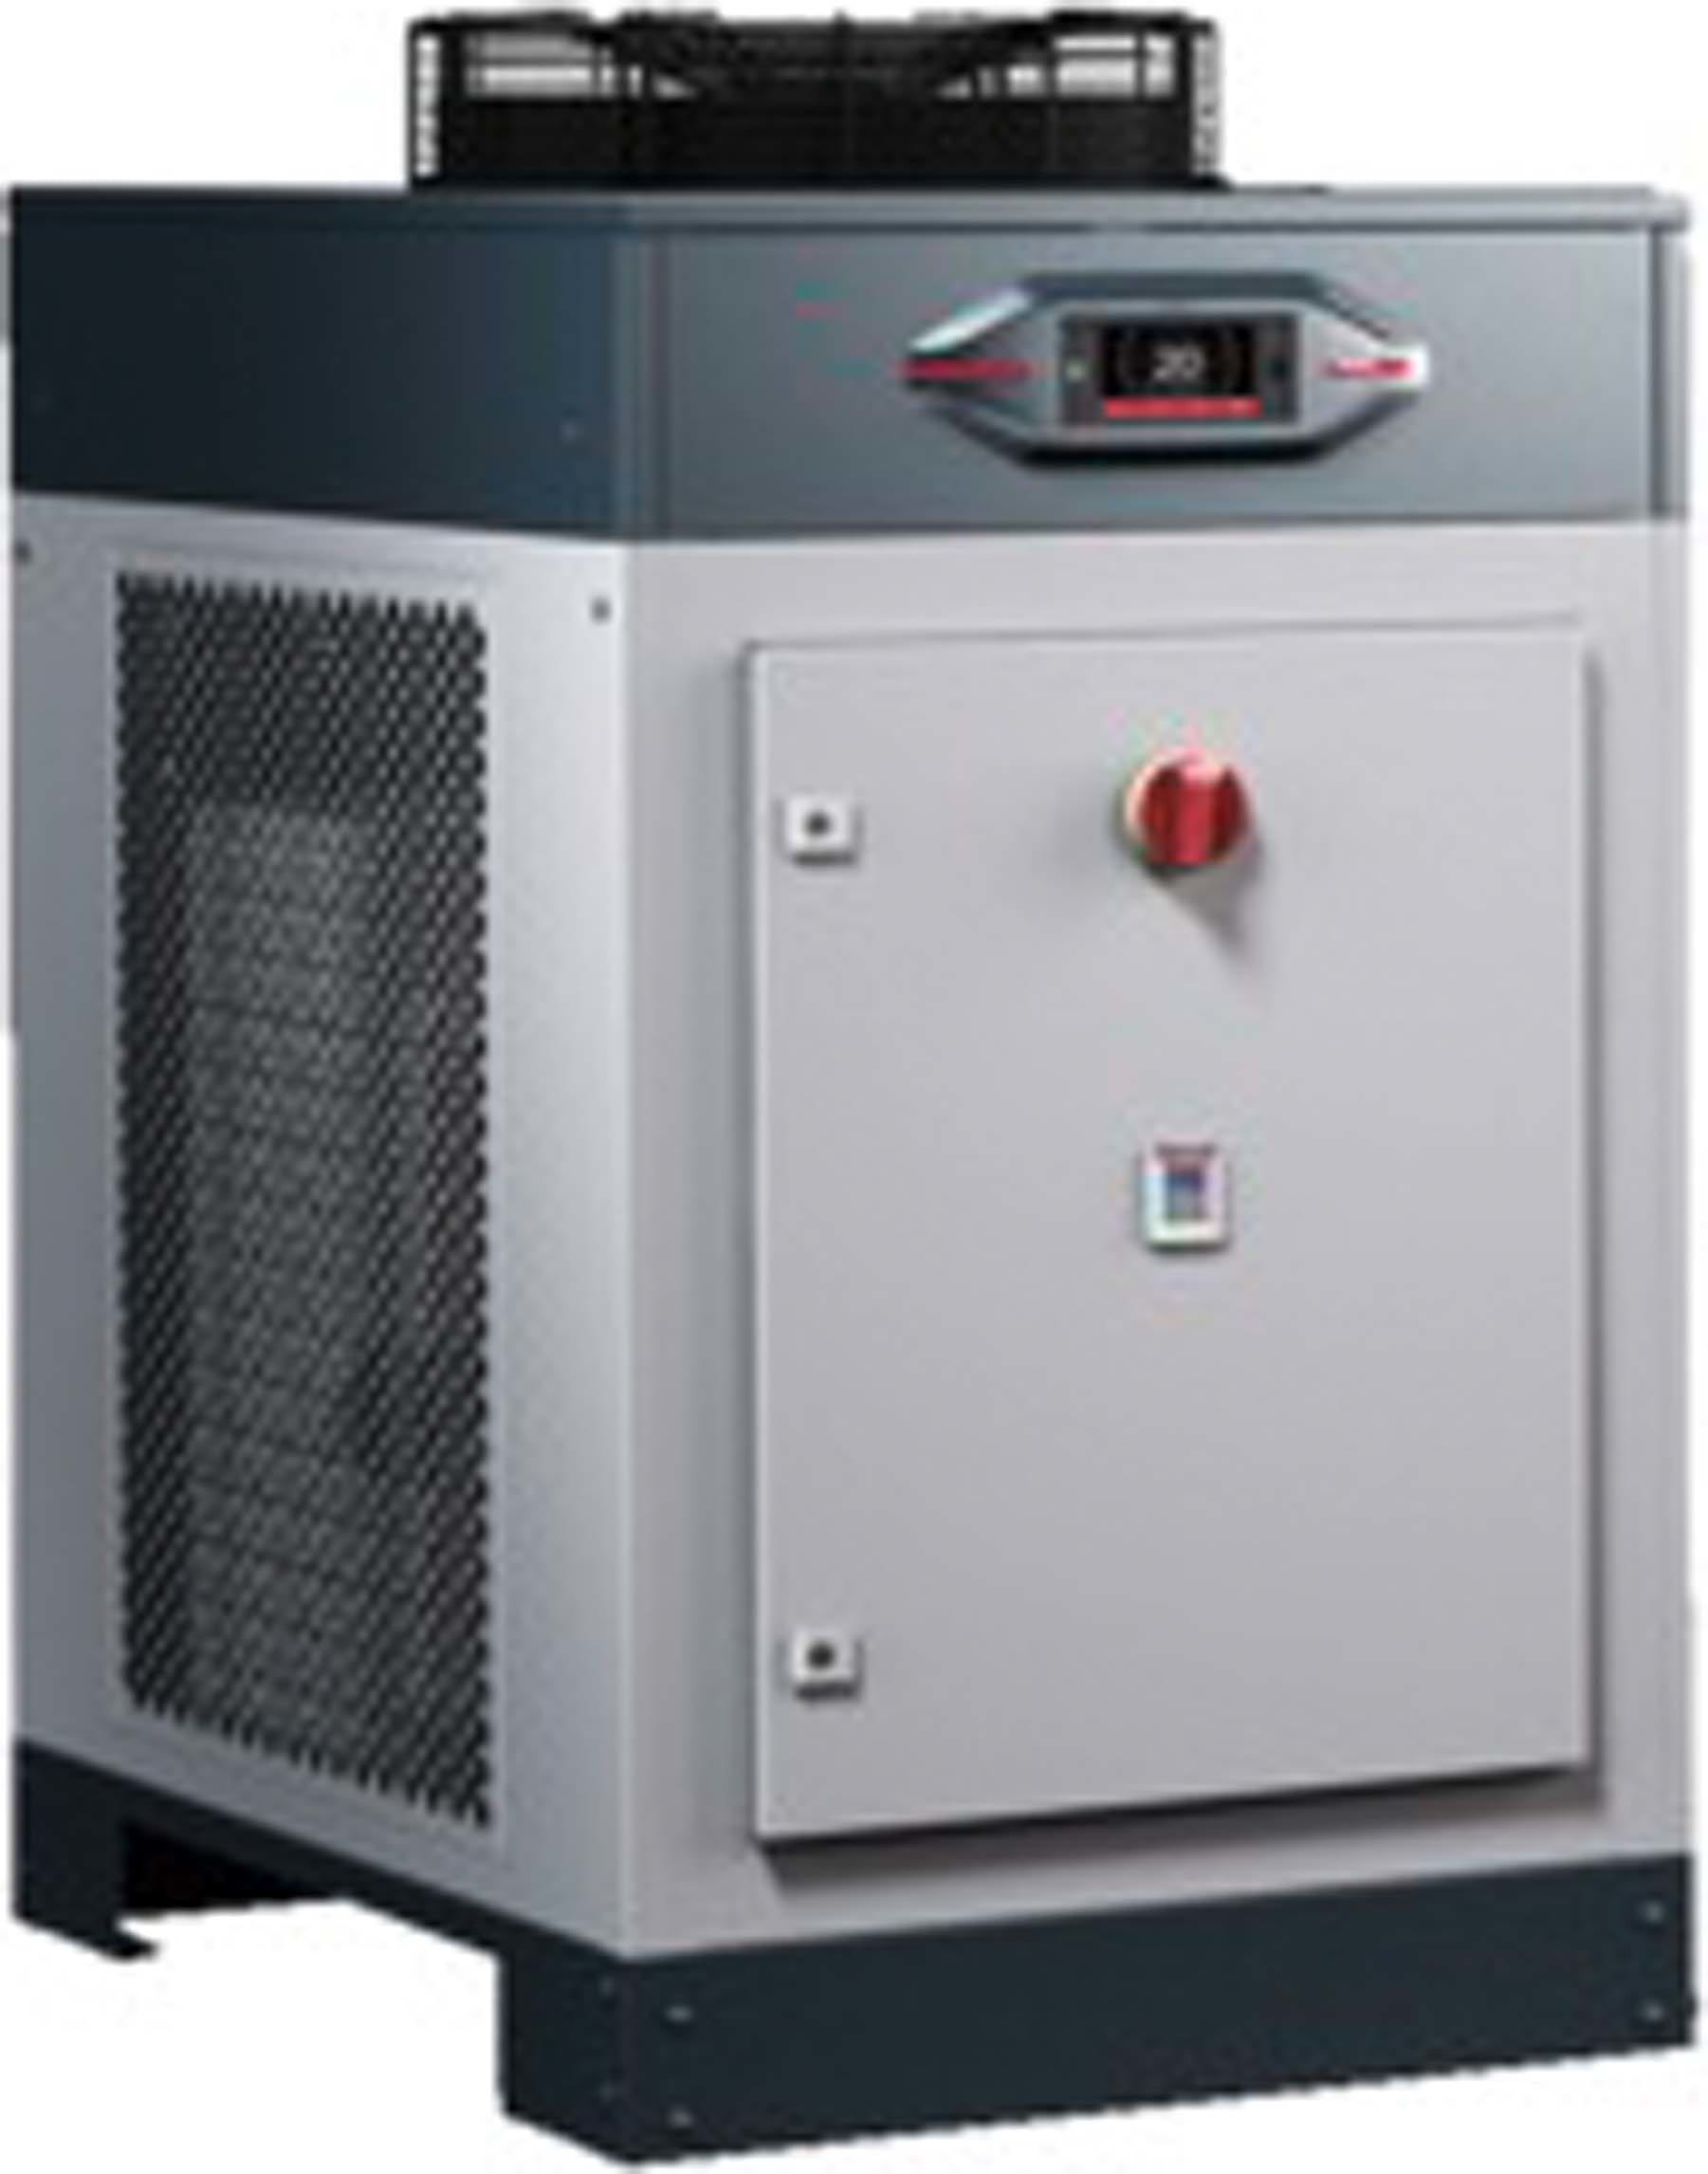 Rittal - Refroidisseur d'eau Blue e 11kW - SK - 11,01/12,67 kW, 400 V